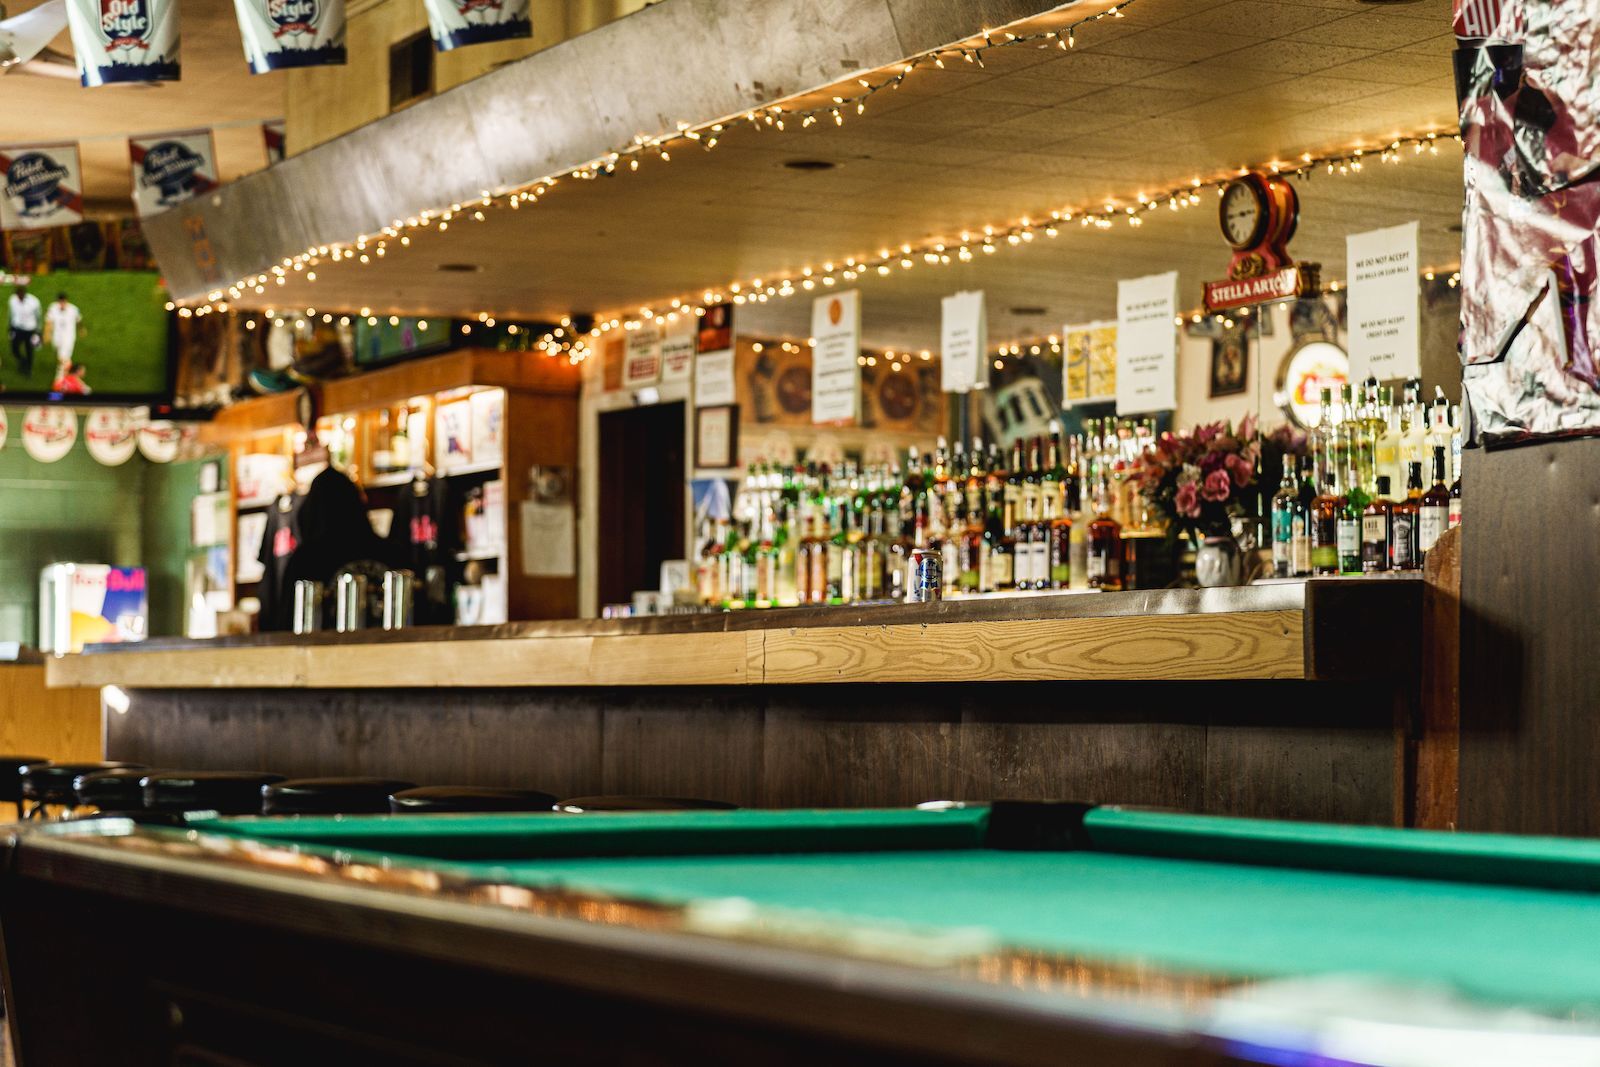 dive bar Chicago llamado Stellas con mesa de billar y lata de Pabst blue ribbon en la barra